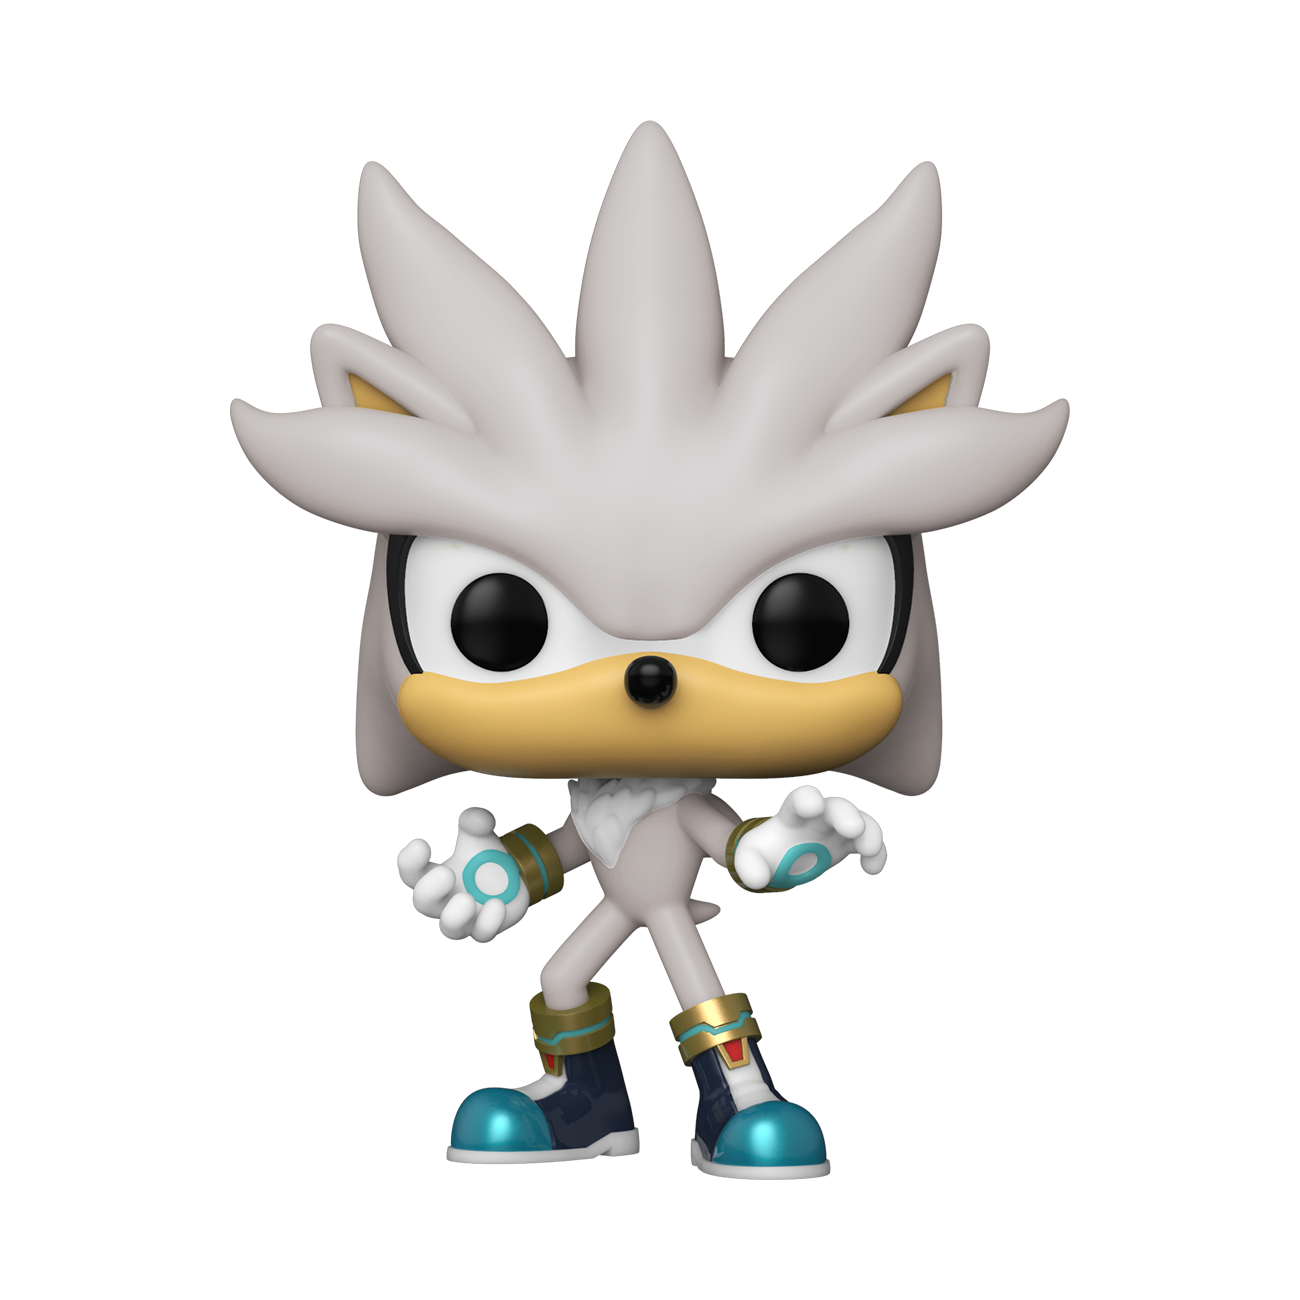 Globo Metalizado Sonic The Hedgehog 18 Pulgadas (45 Cms)